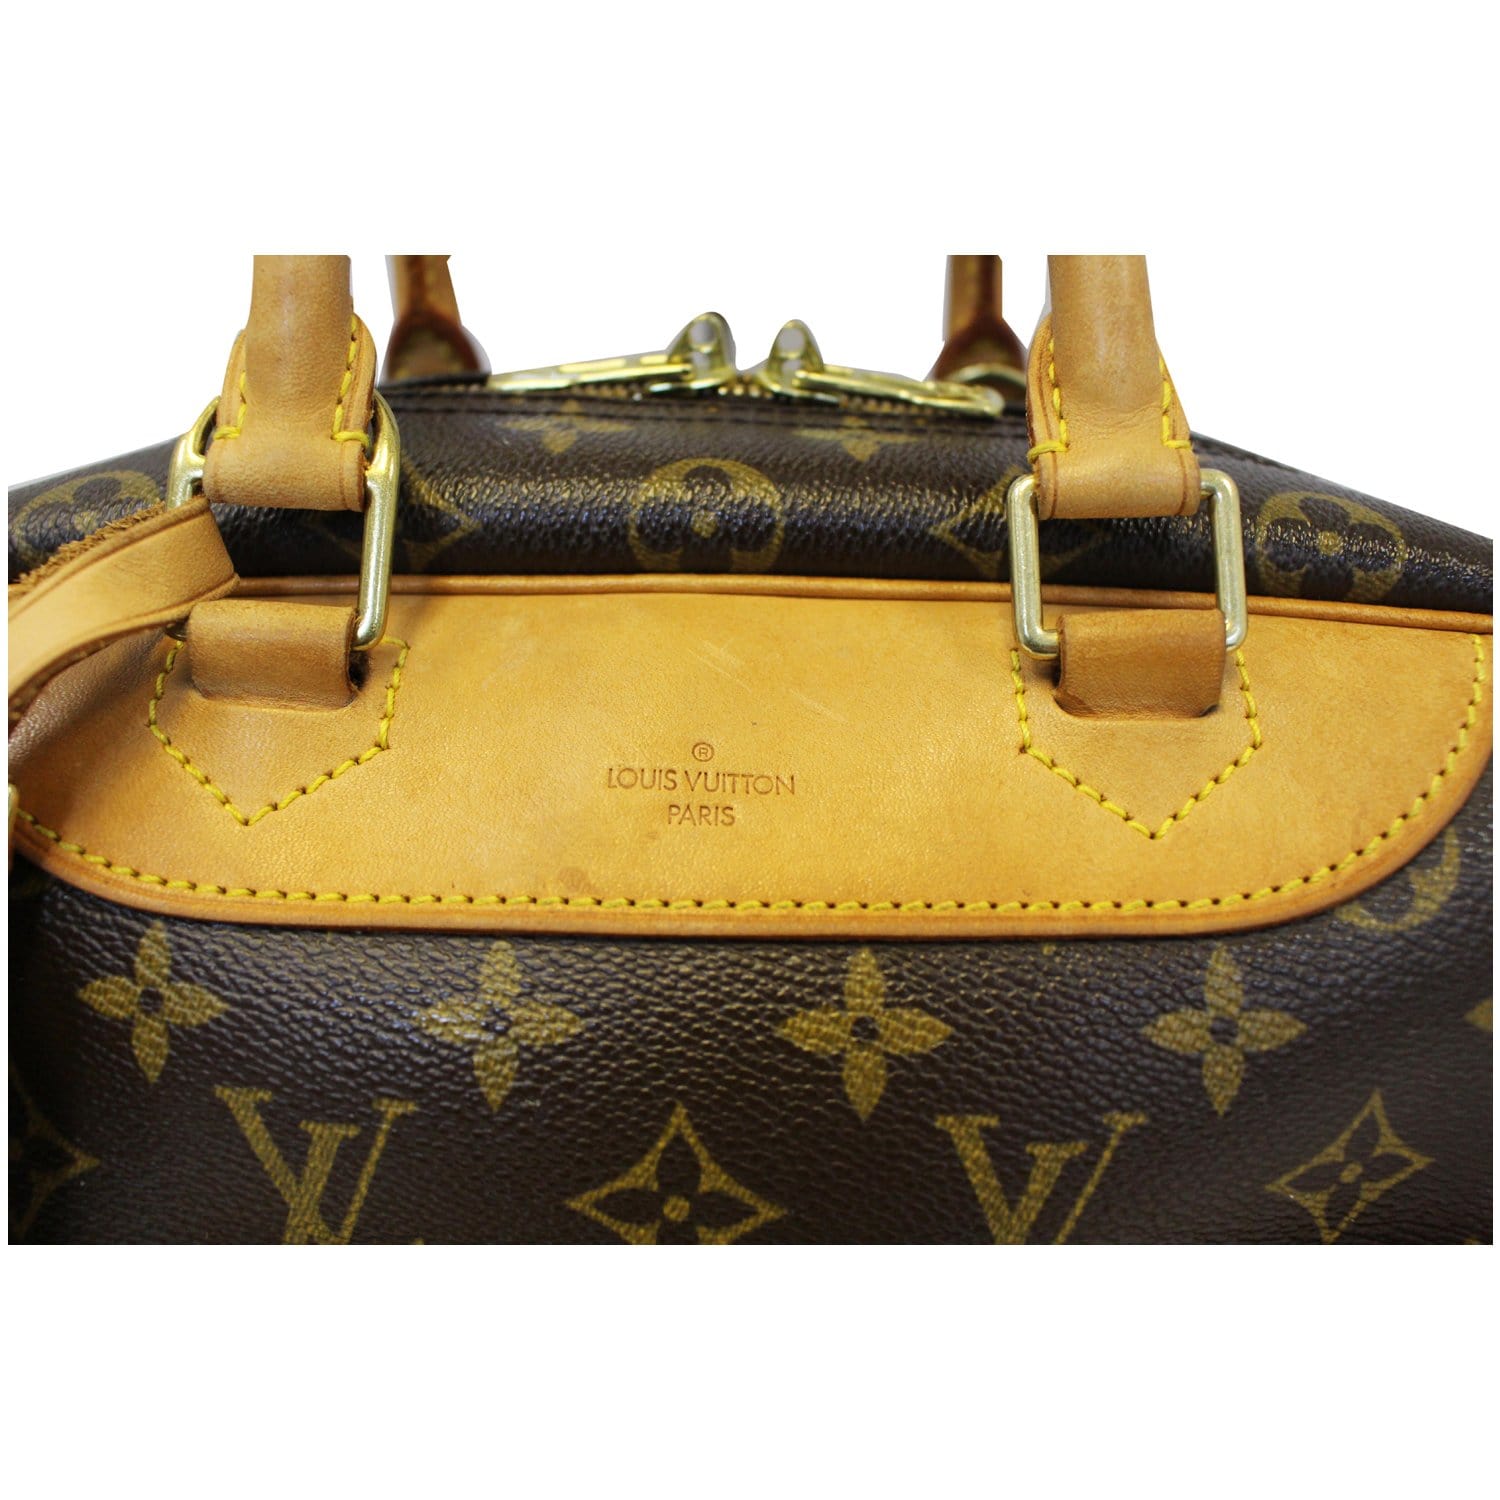 La colección “Lockit” de Louis Vuitton